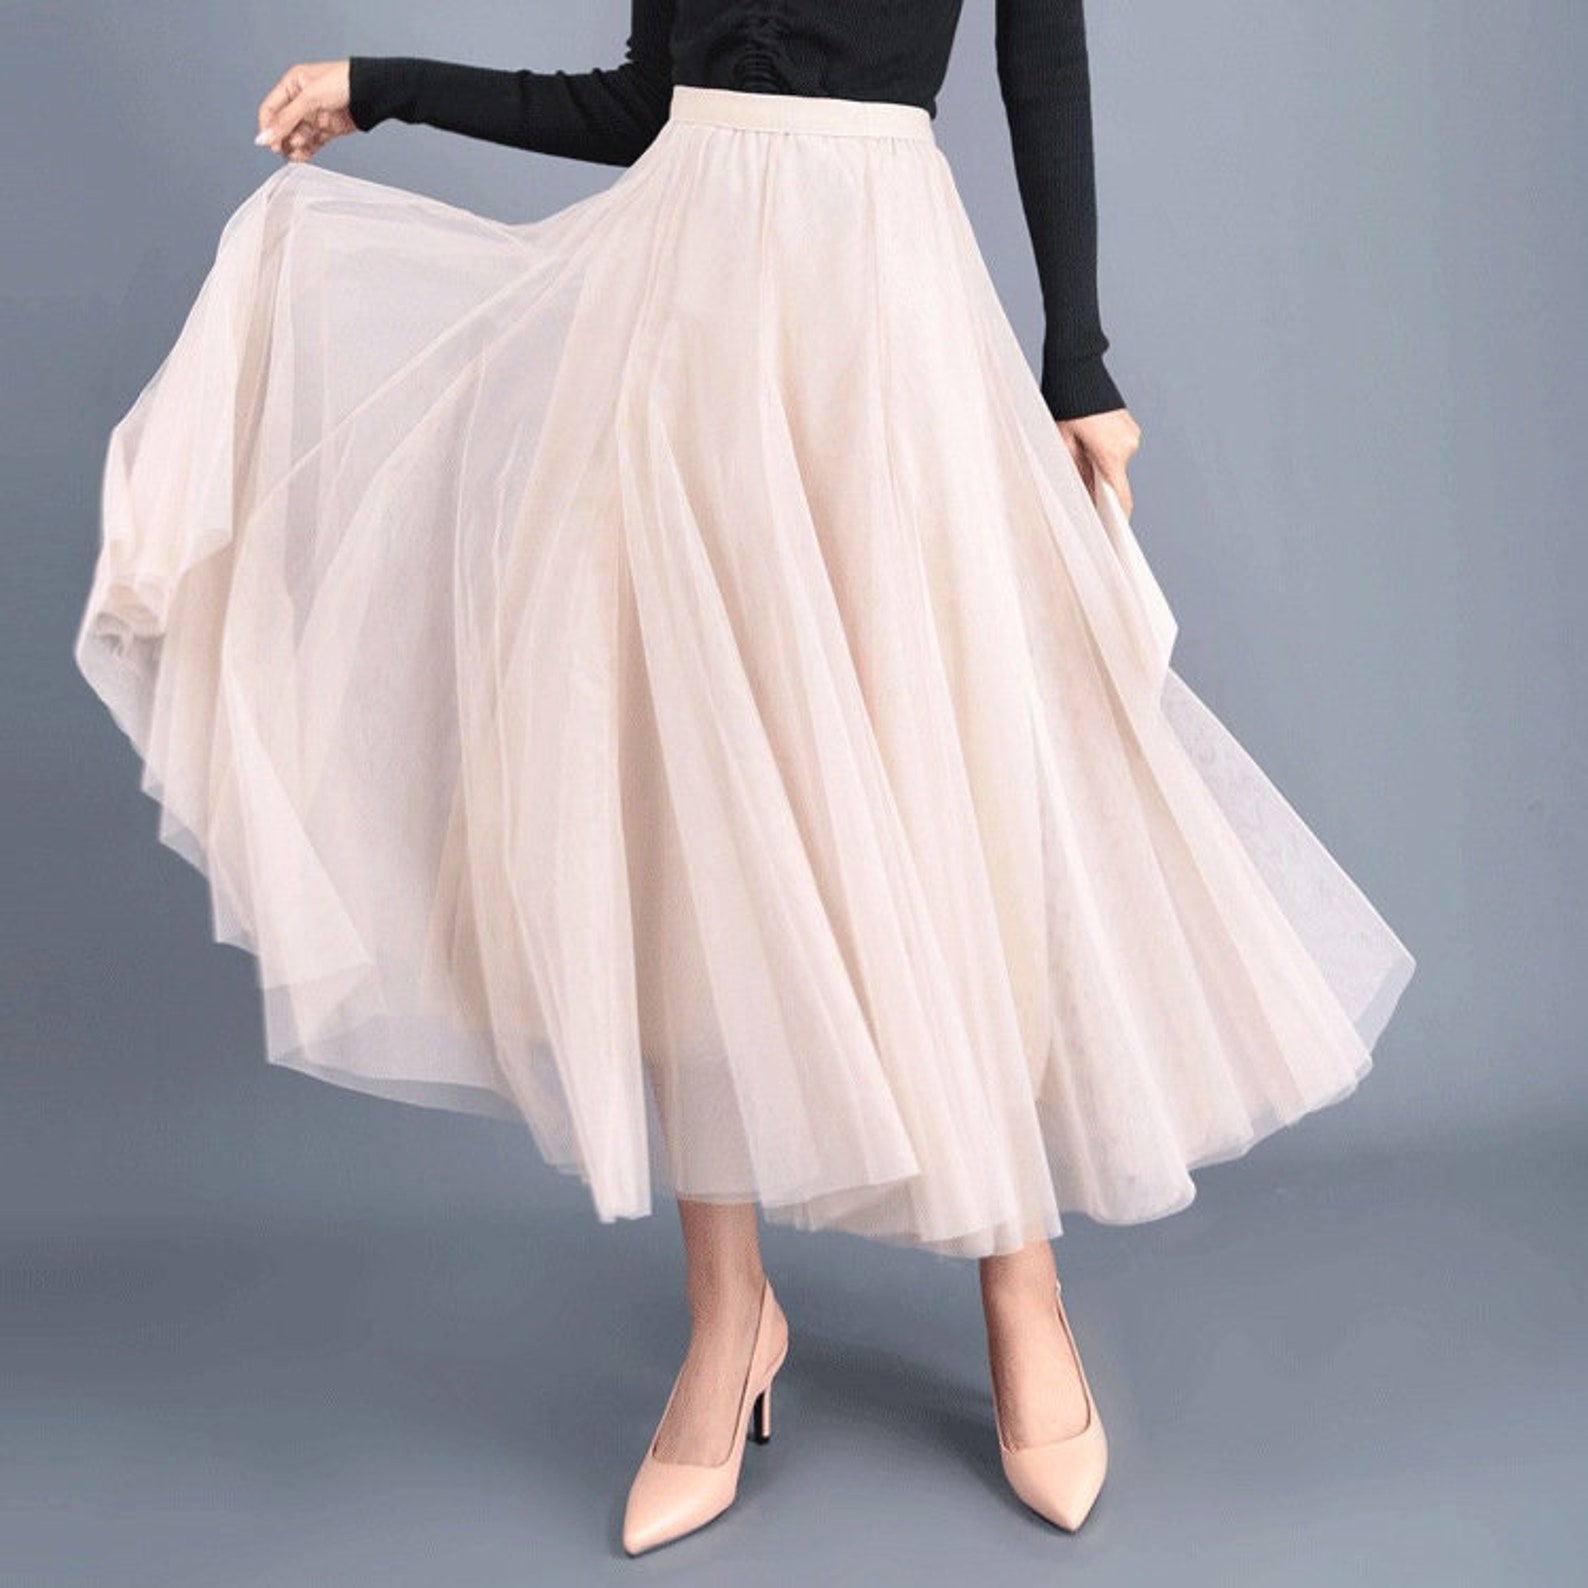 Tulle Skirtsummer Mesh Skirt16 Color Wedding Skirtbridal - Etsy